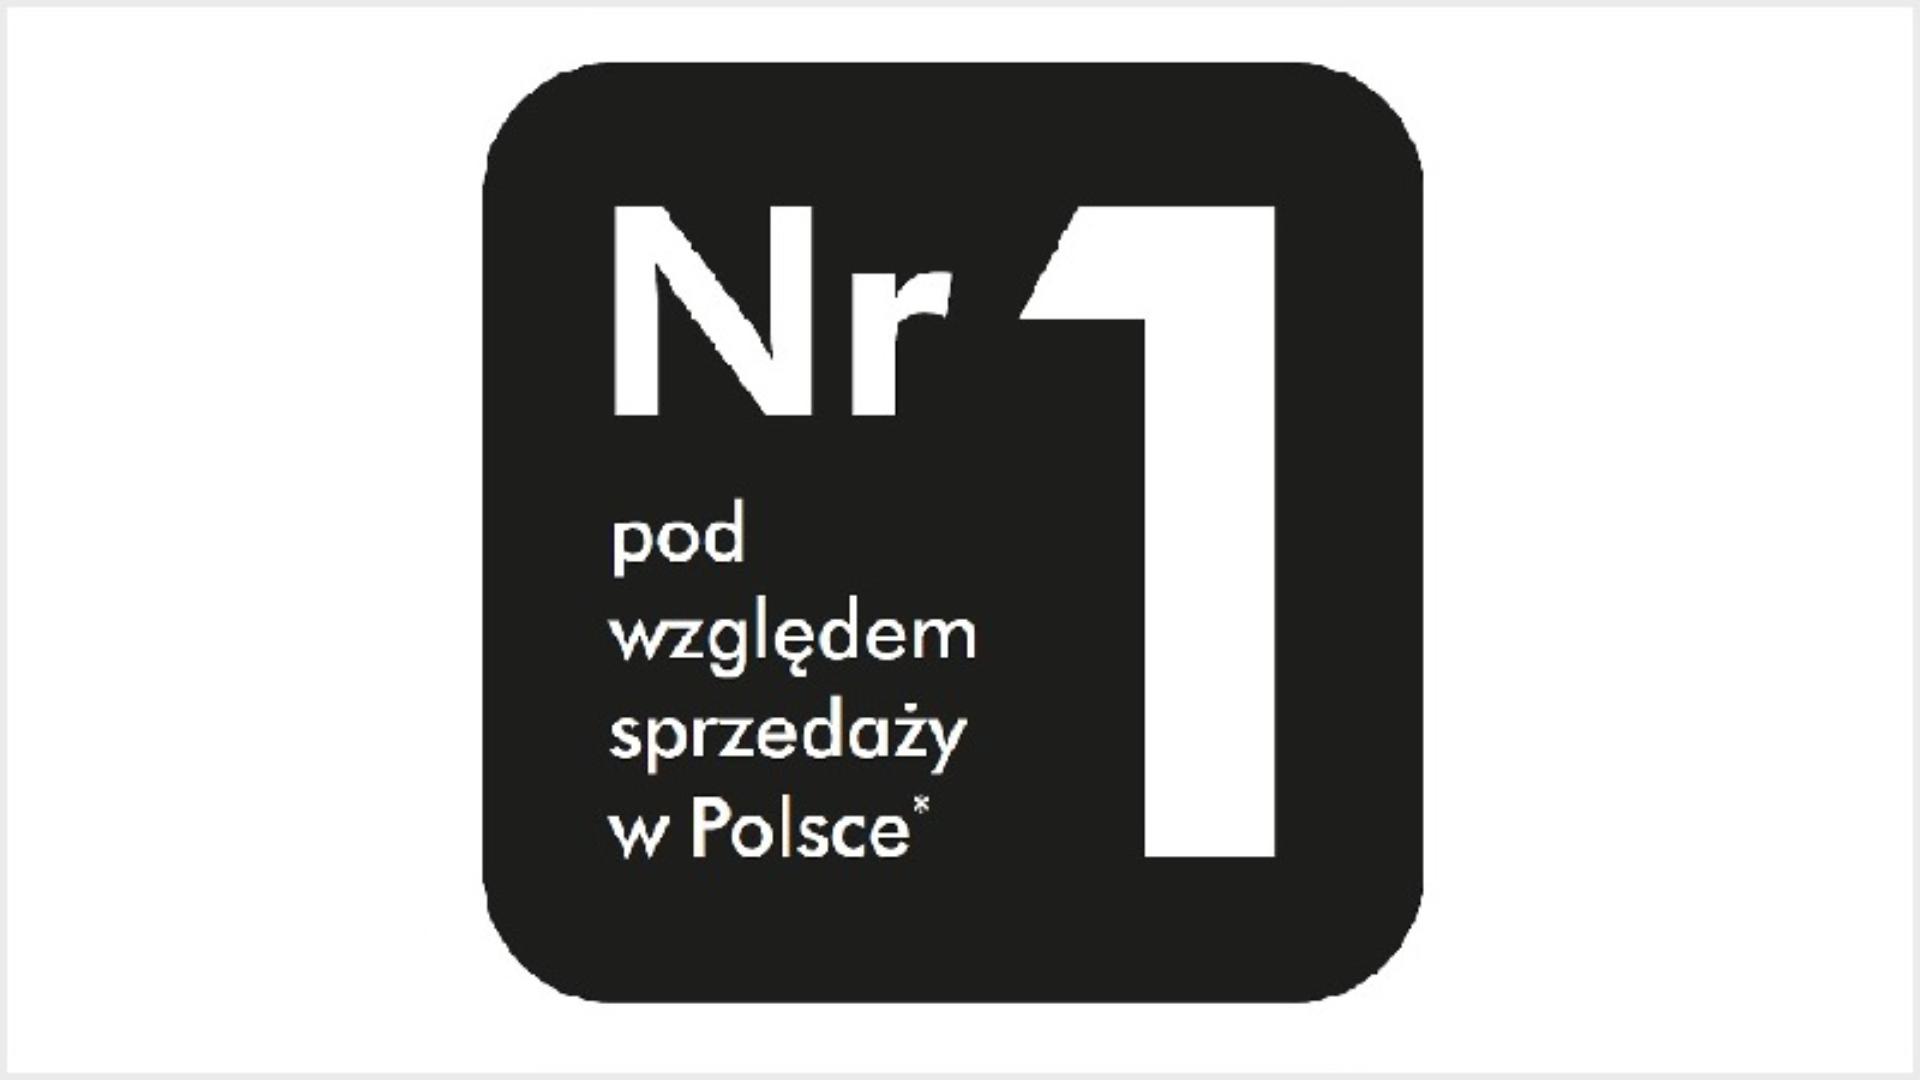 logo Nr 1 pod względem sprzedaży w Polsce